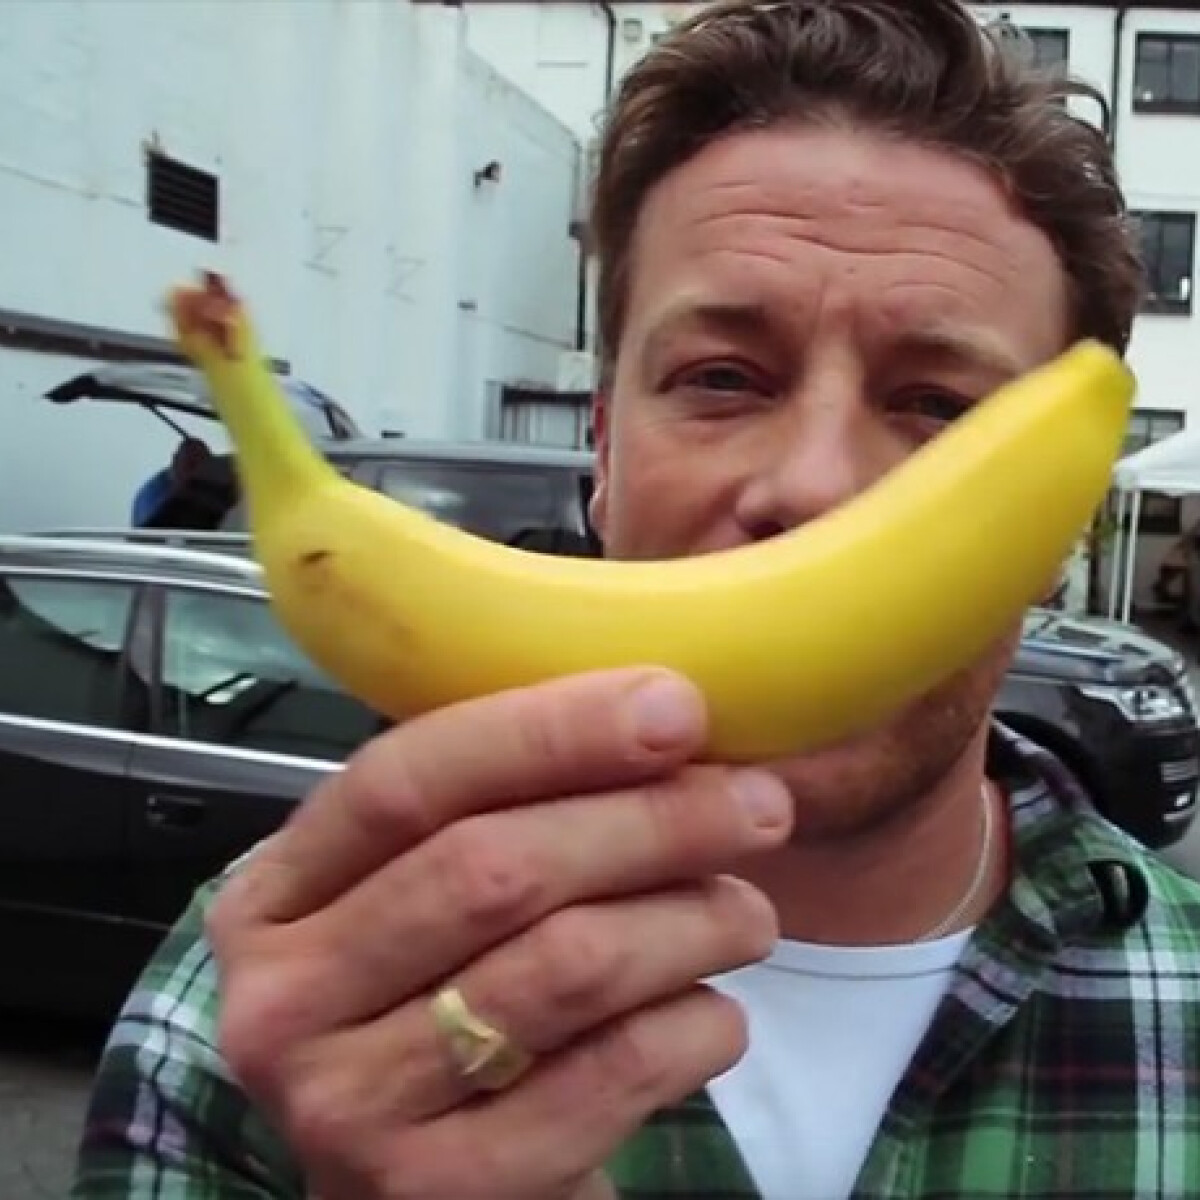 Mit művel Jamie Oliver ezzel a banánnal???